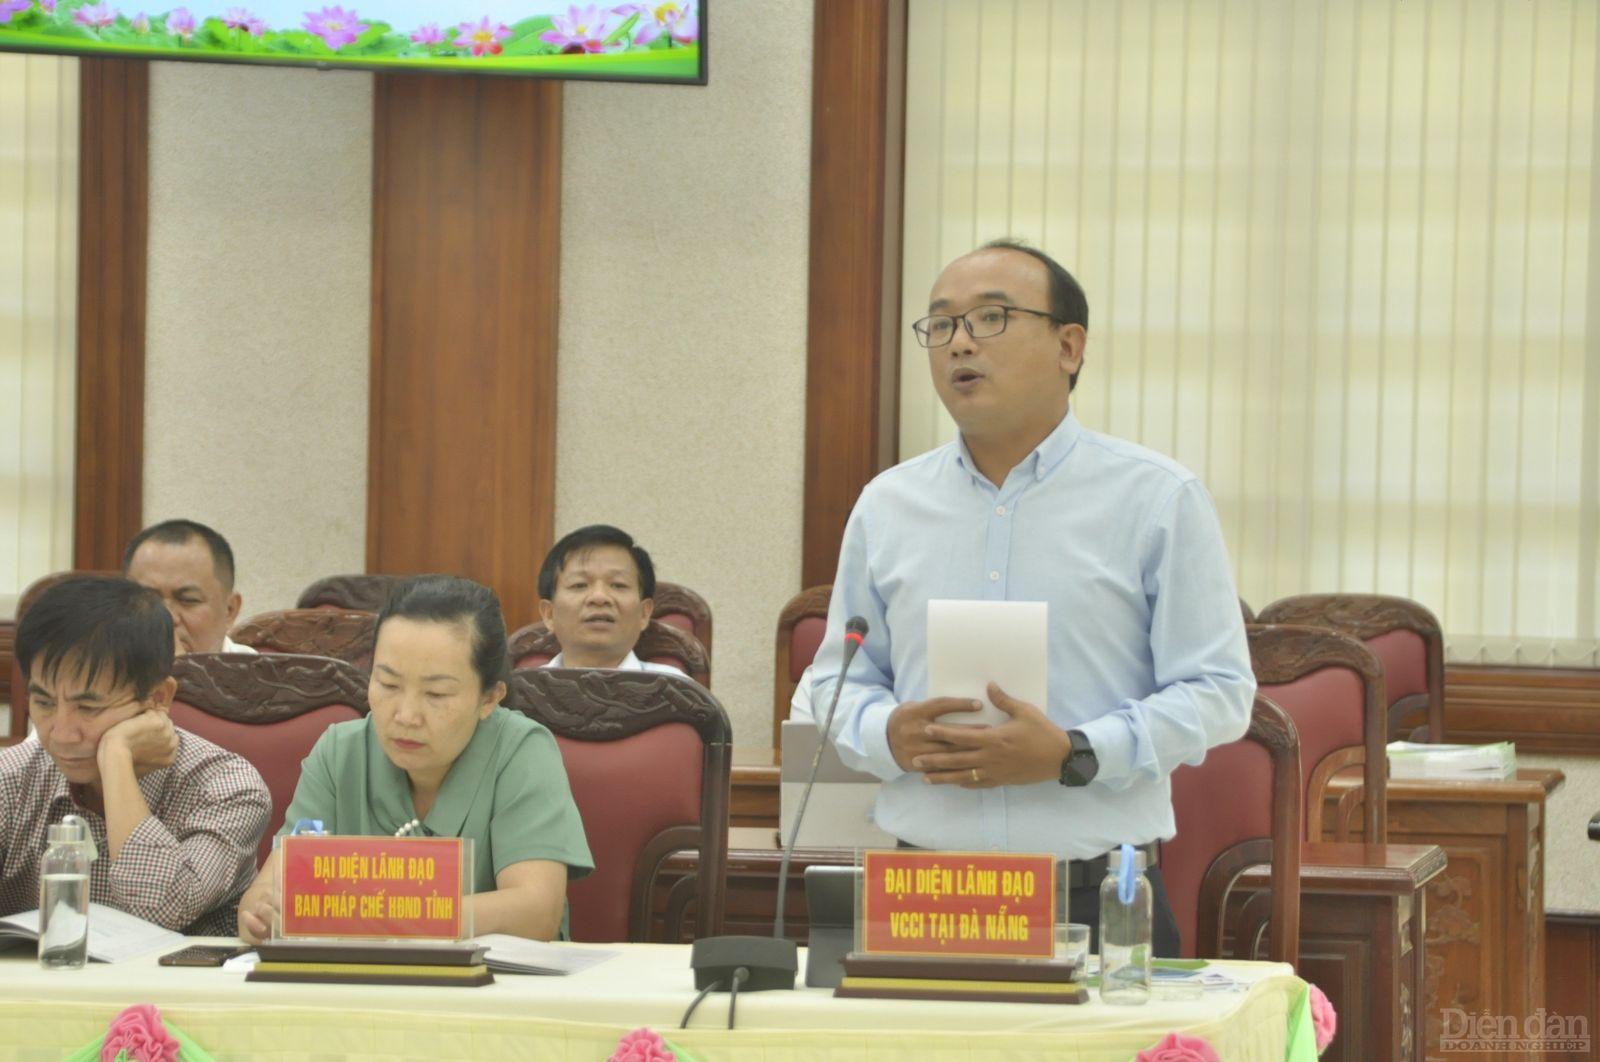 Lãnh đạo VCCI Đà Nẵng phát biểu góp ý về cải cách nâng cao các bộ chỉ số trong năm tiếp theo